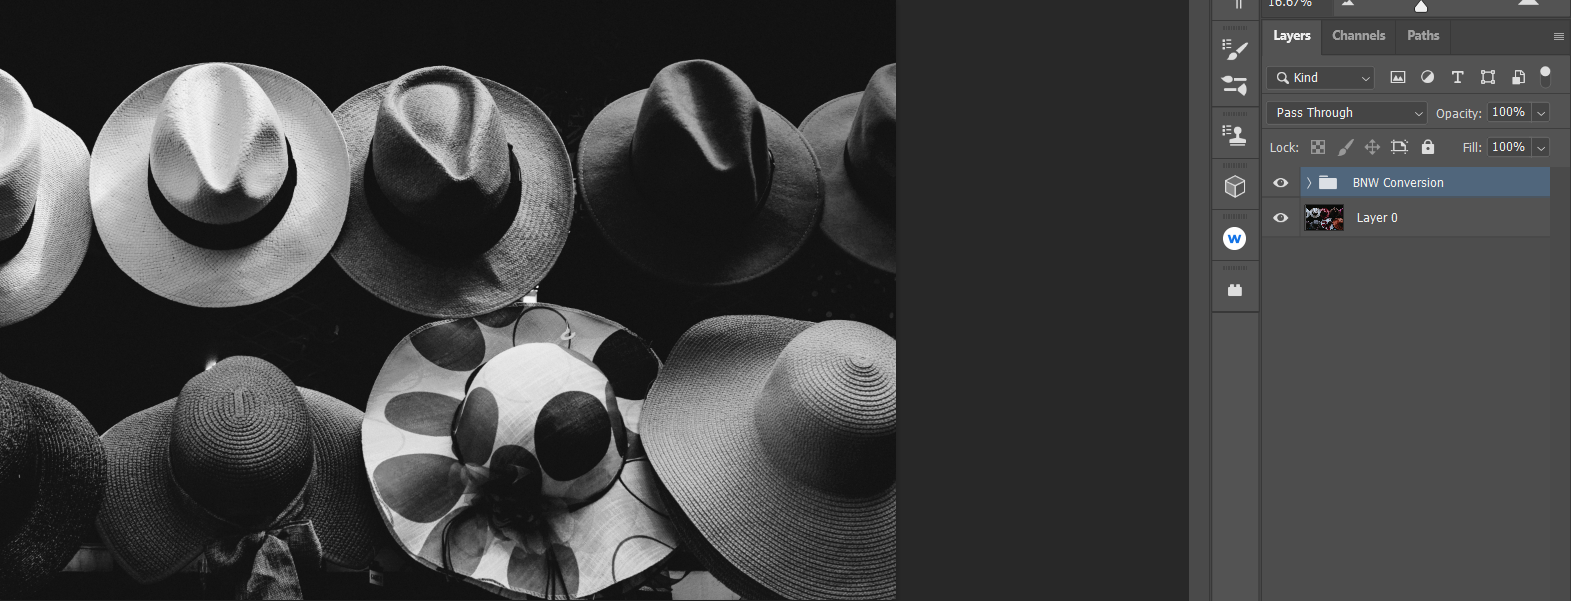 Hats After - Come creare immagini espressive in bianco e nero usando il colore in Photoshop